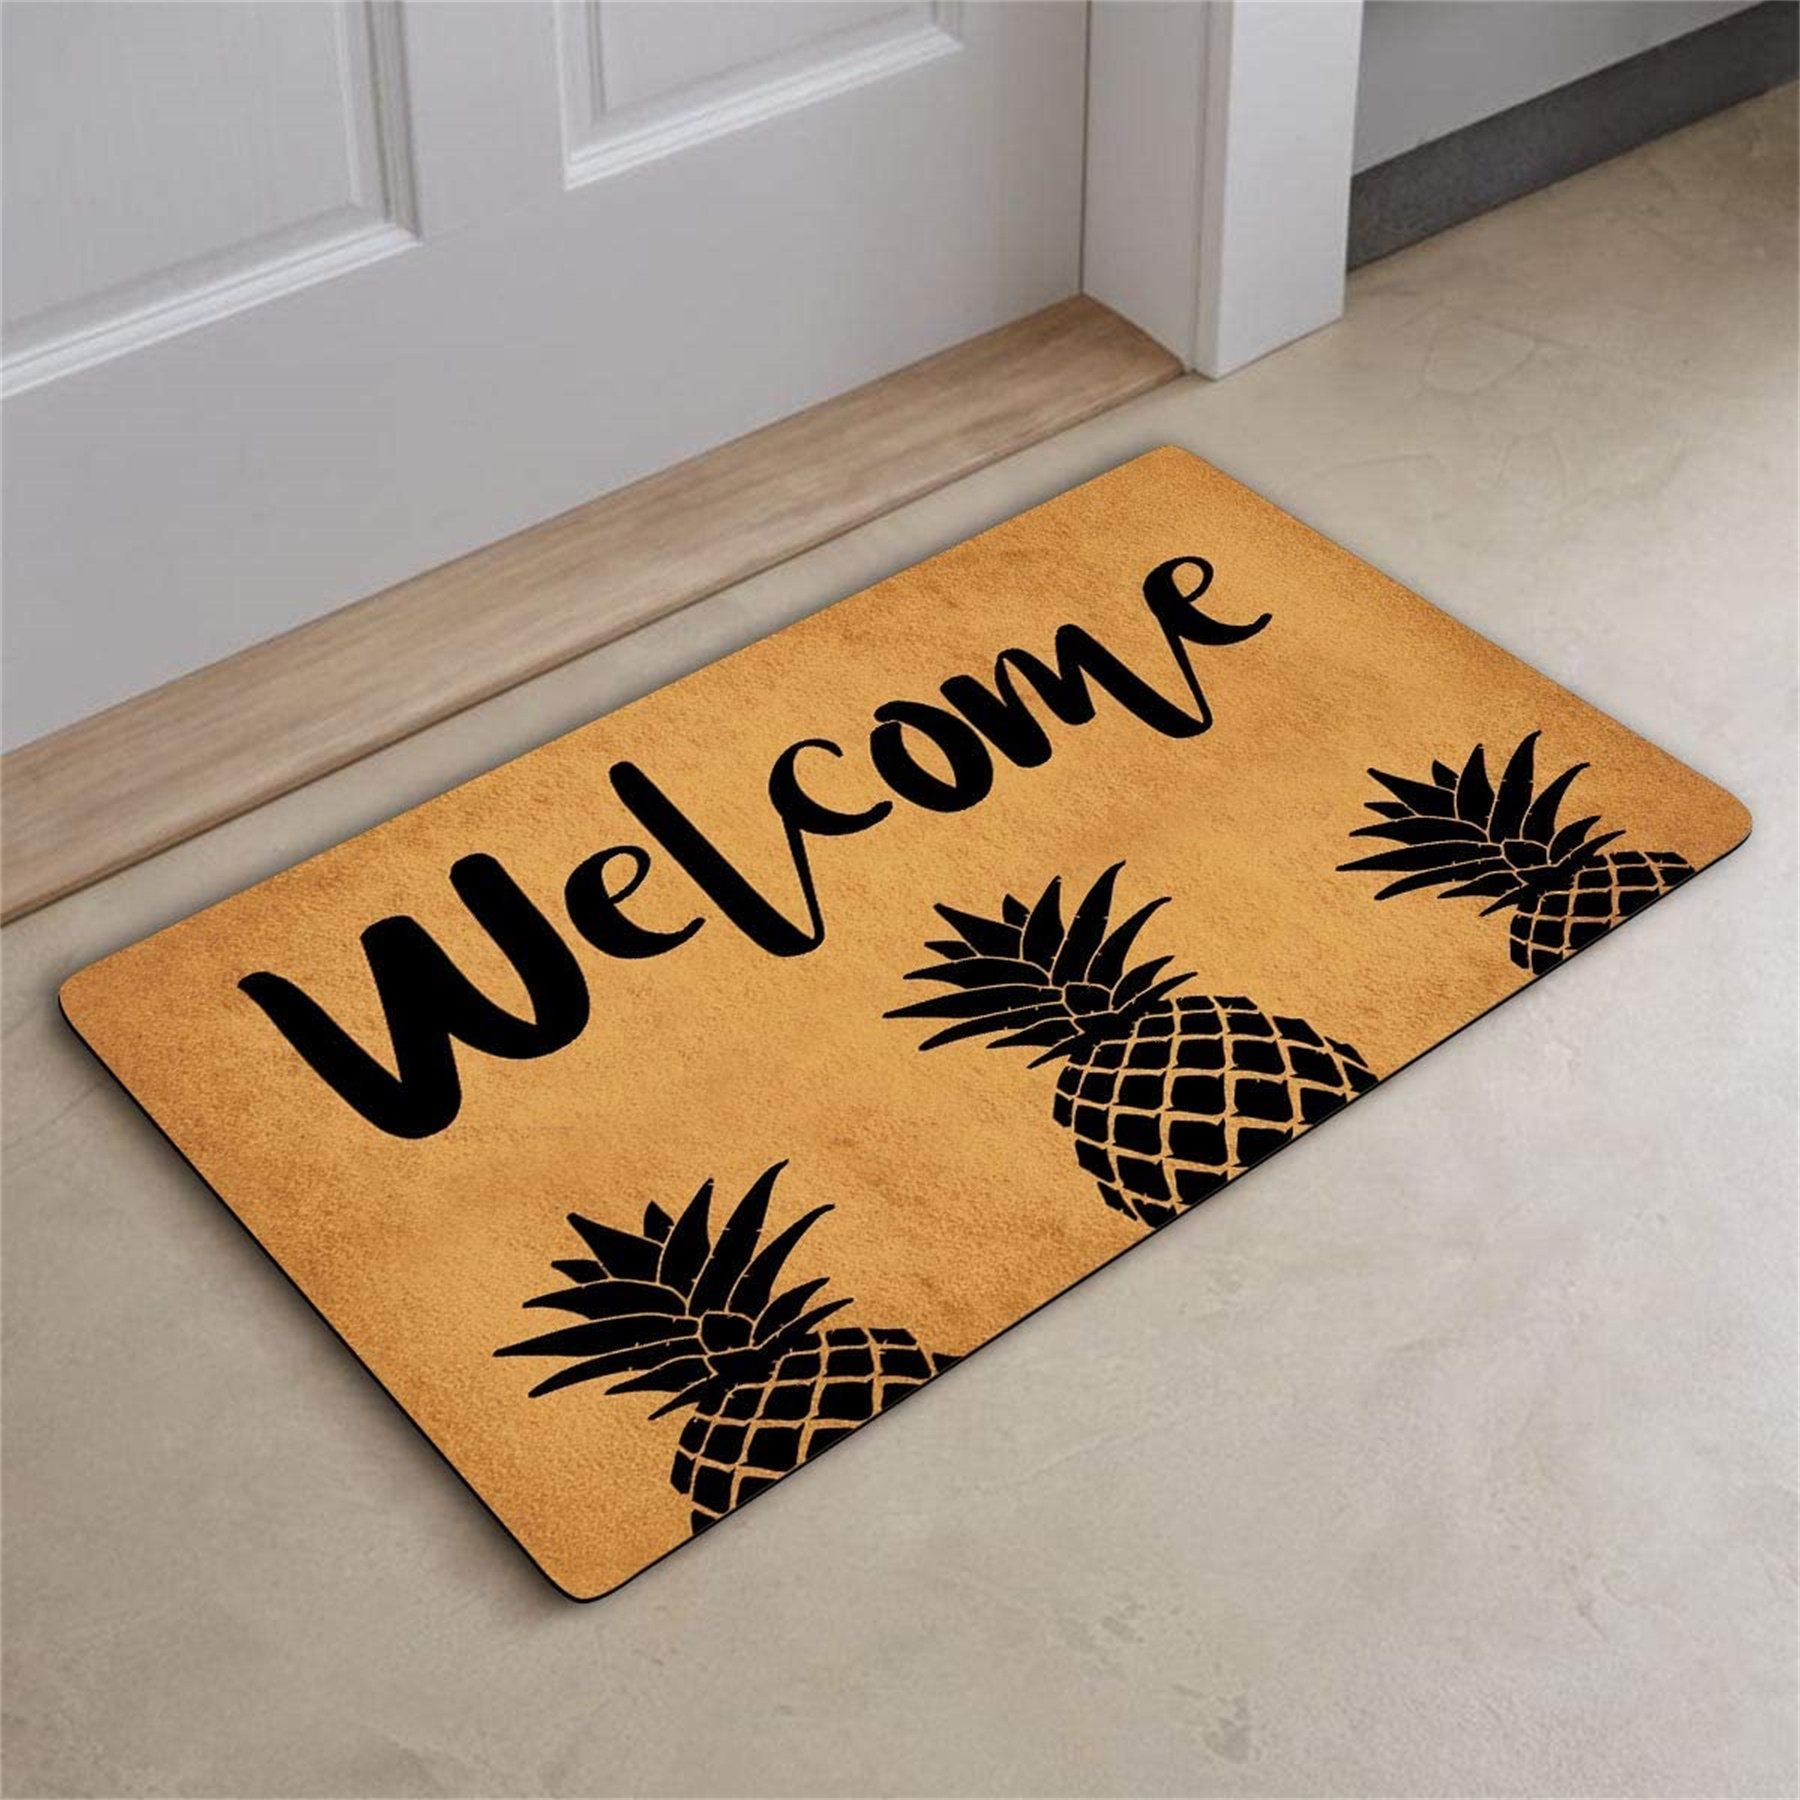 Funny Welcome Floor Entrance Door Rubber Non Slip Mat Indoor Outdoor Doormat 